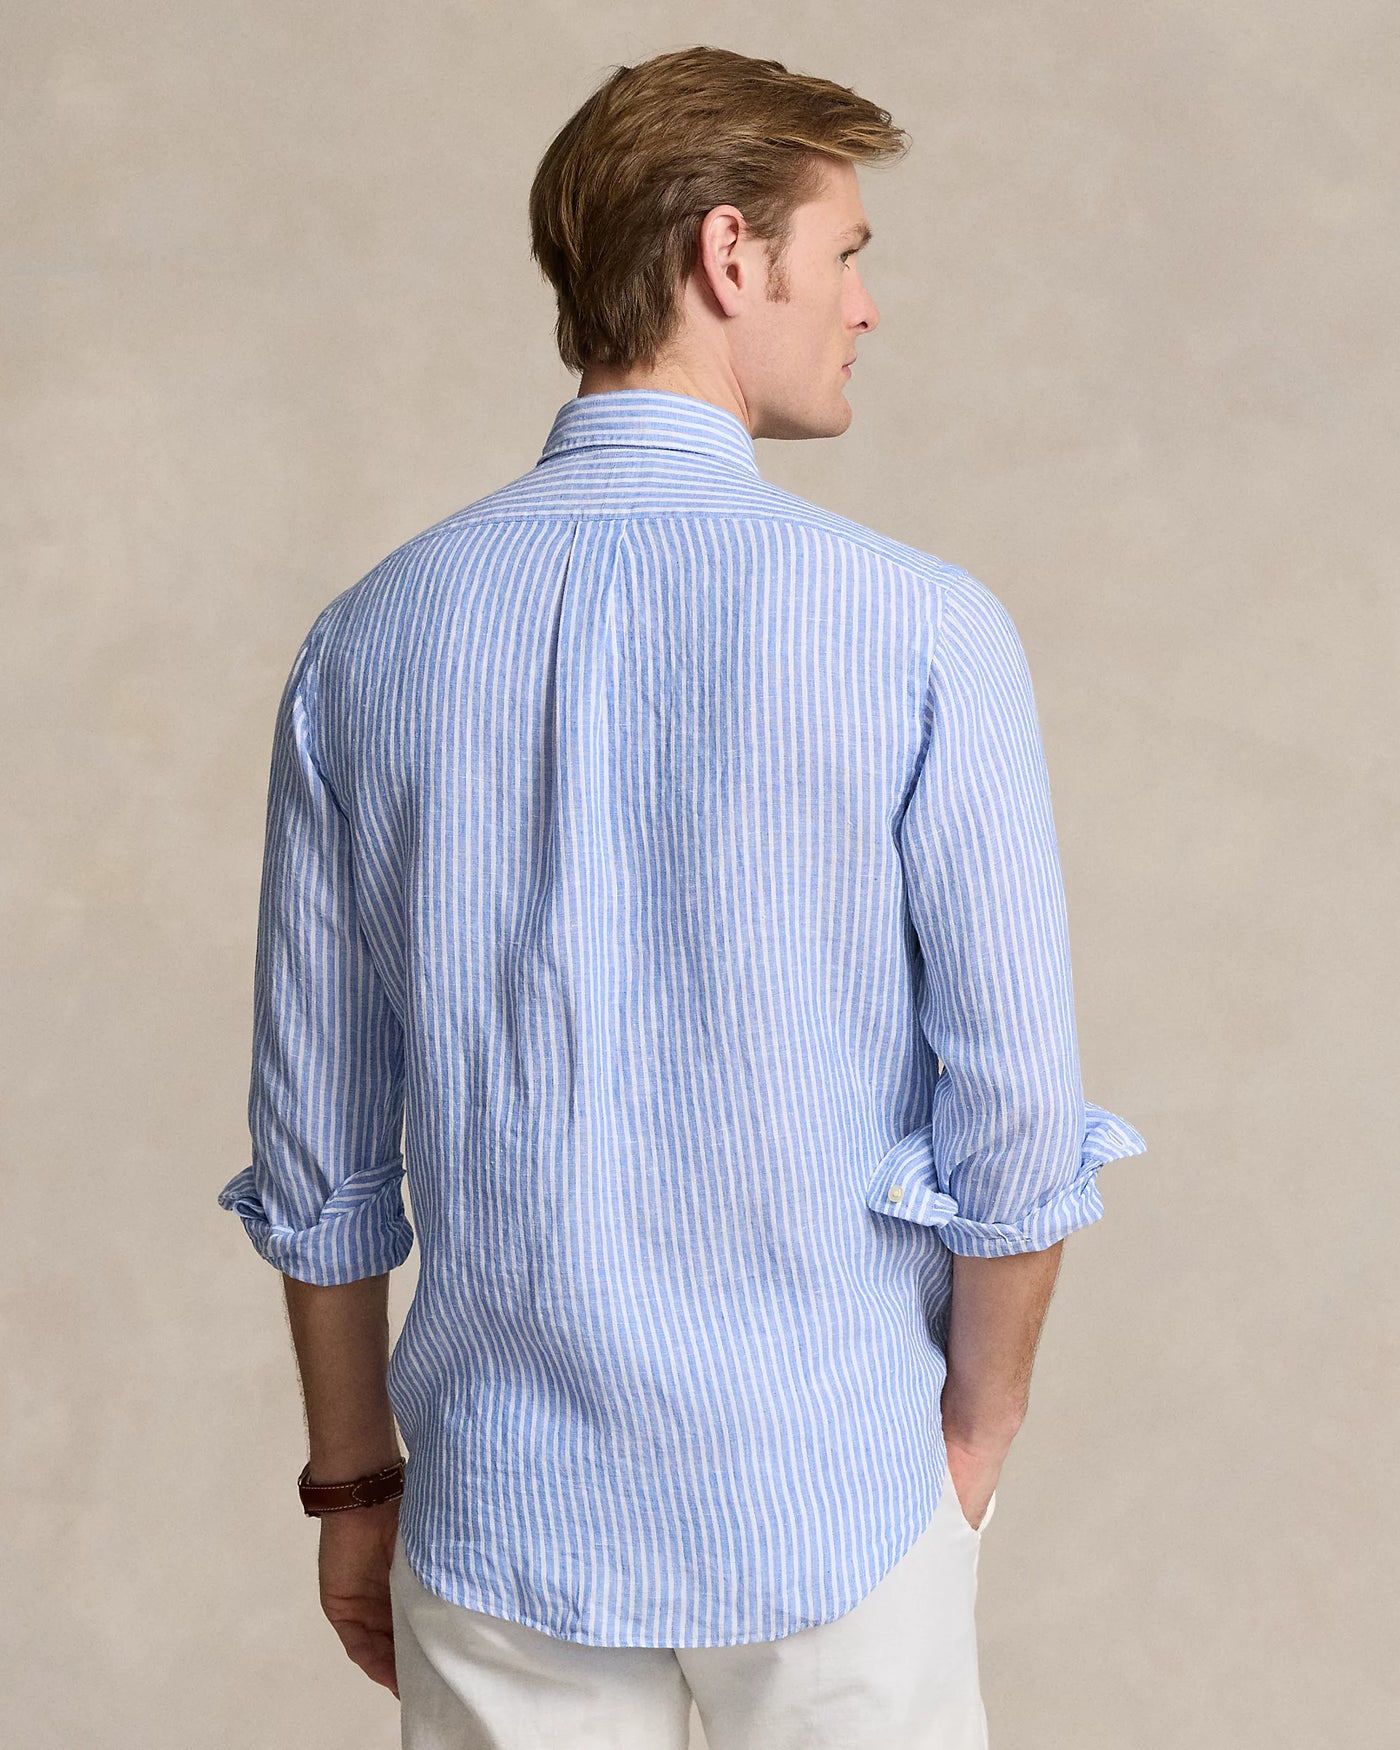 Ralph Lauren Custom Fit Striped Linen Shirt | Blue/White